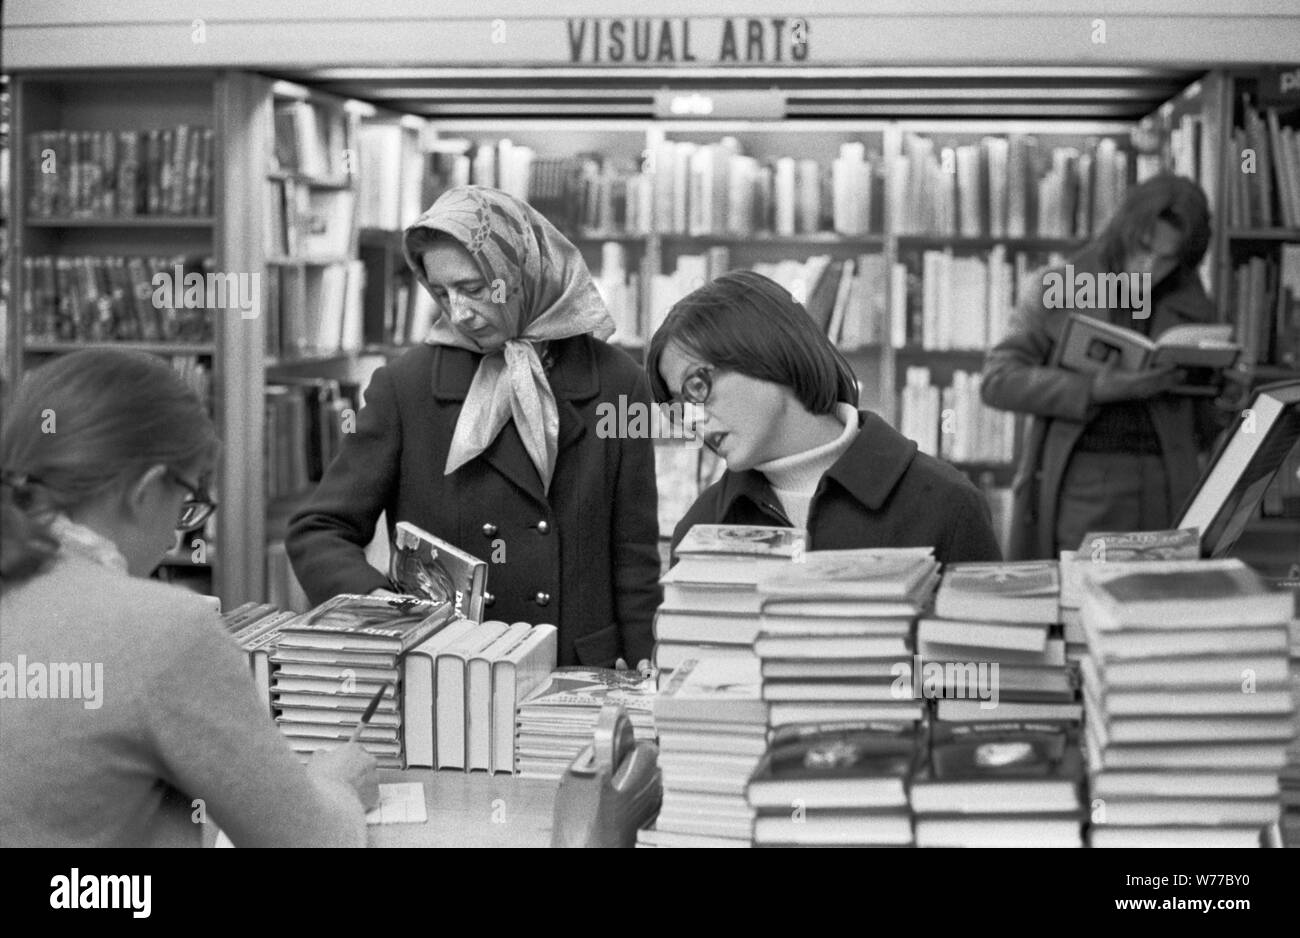 1970 shopping, donne in un negozio di libri gente che naviga selezionando libri affollato occupato Londra libreria anni 70 Regno Unito OMERO SYKES Foto Stock